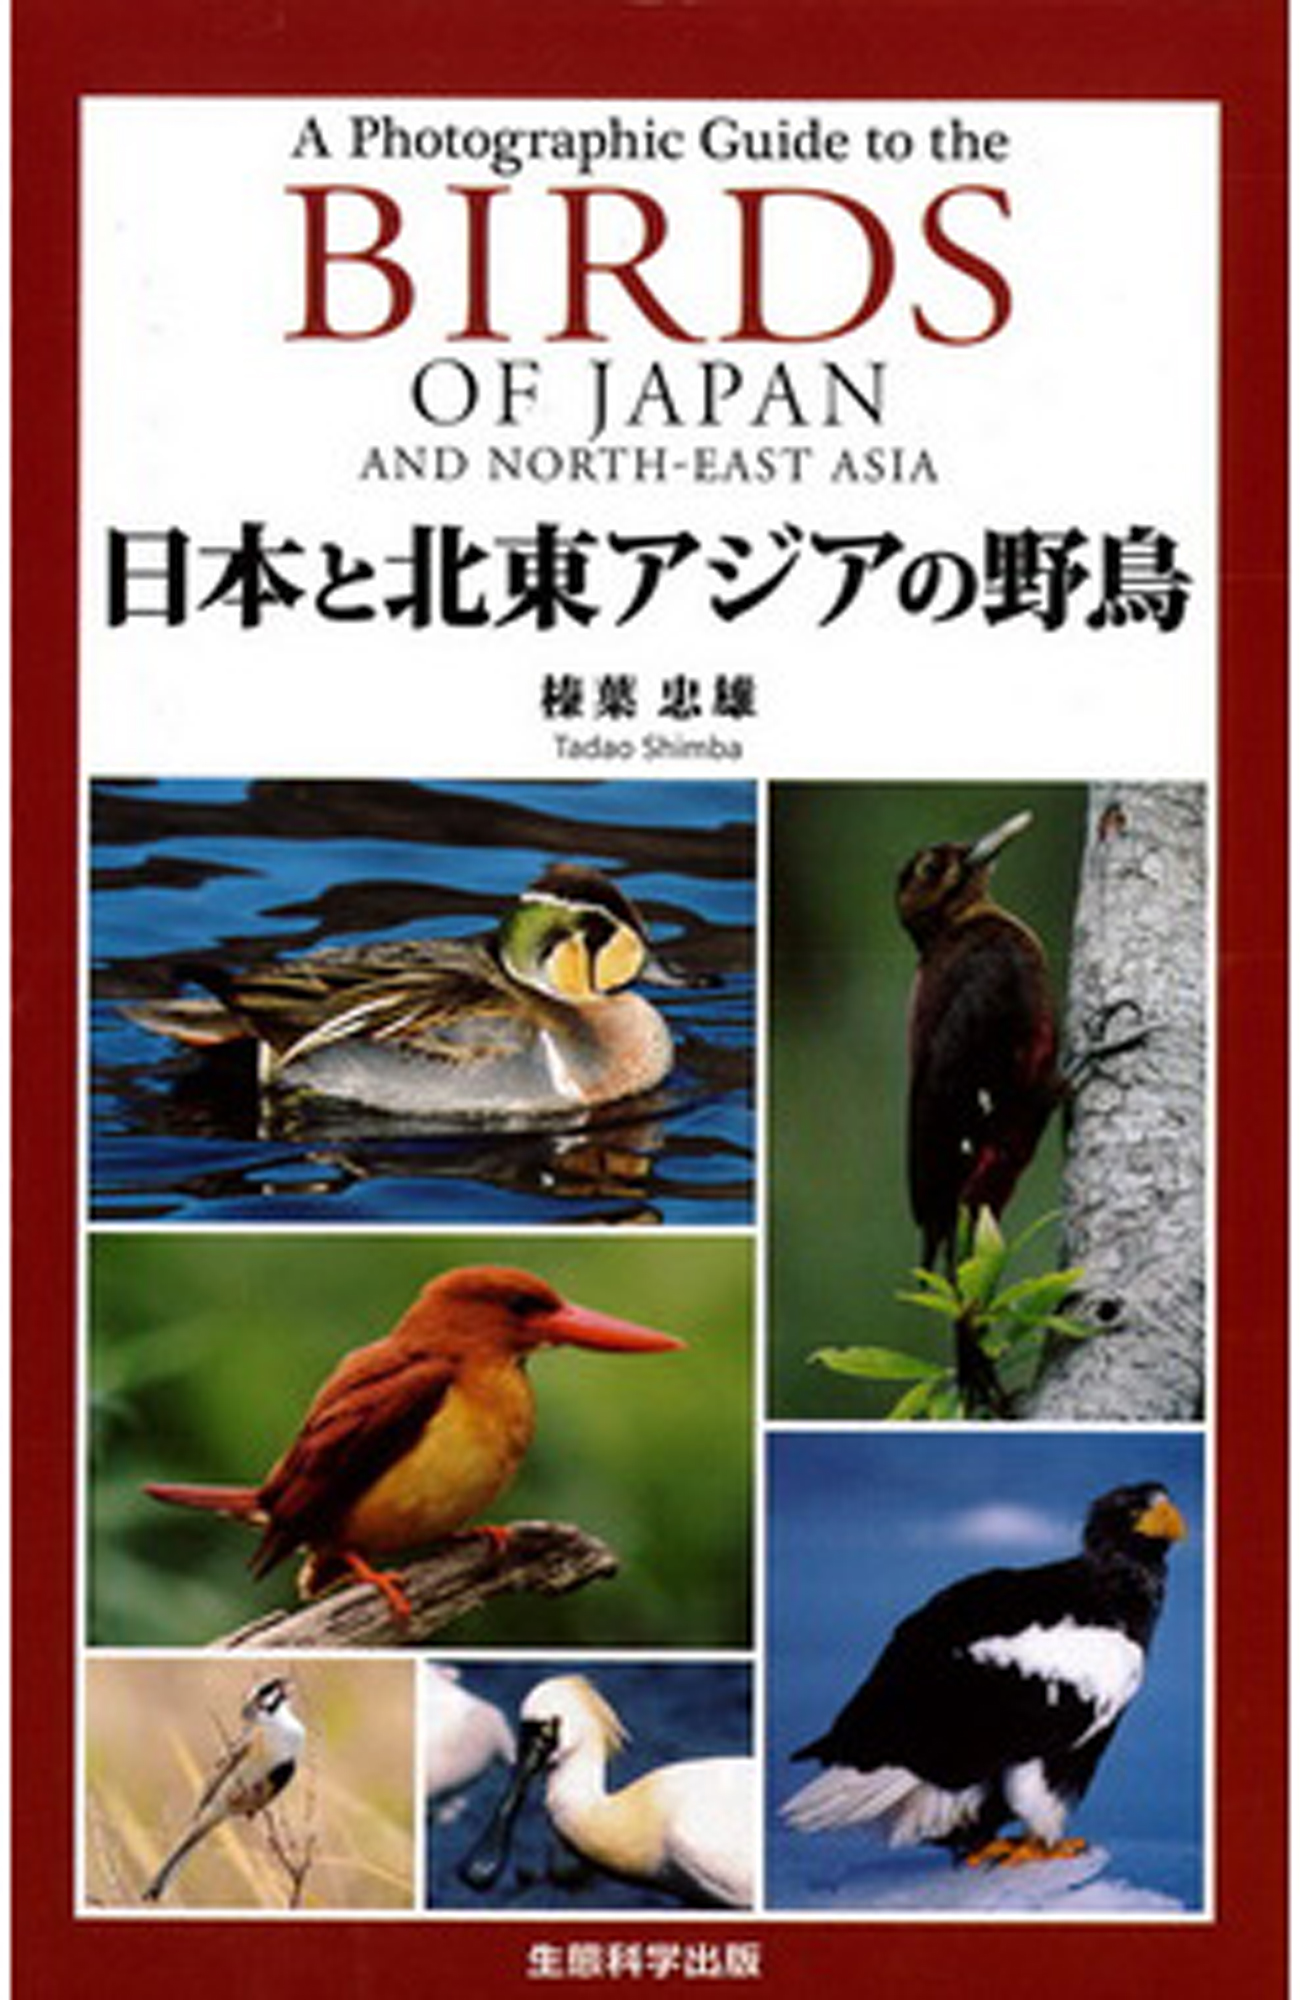 日本と北東アジアの野鳥「BIRDS OF JAPAN AND NORTH-EAST ASIA」